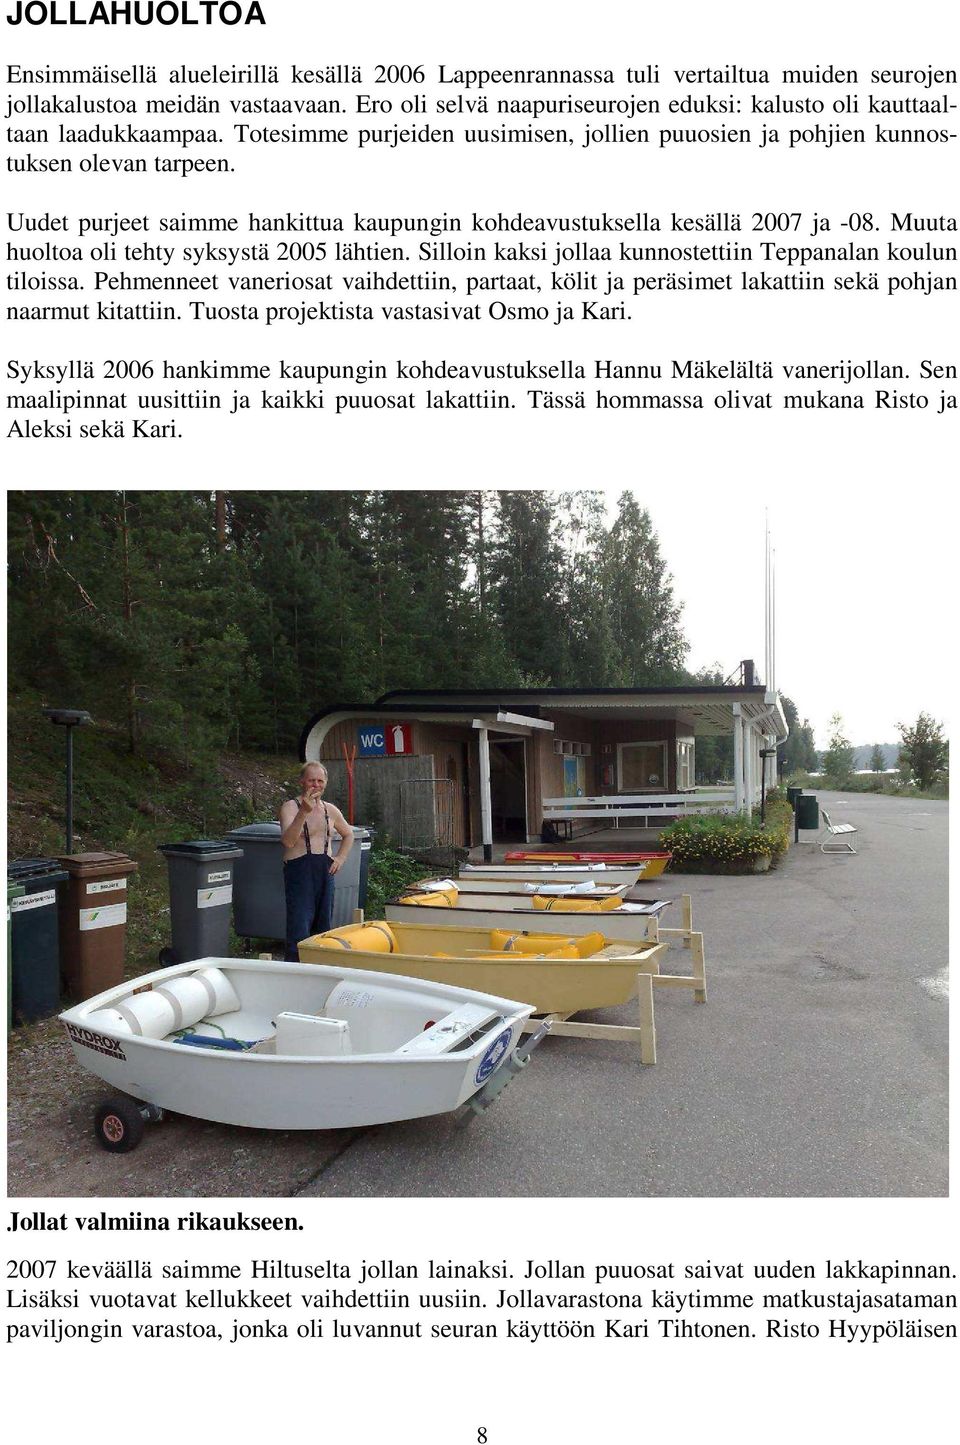 Uudet purjeet saimme hankittua kaupungin kohdeavustuksella kesällä 2007 ja -08. Muuta huoltoa oli tehty syksystä 2005 lähtien. Silloin kaksi jollaa kunnostettiin Teppanalan koulun tiloissa.